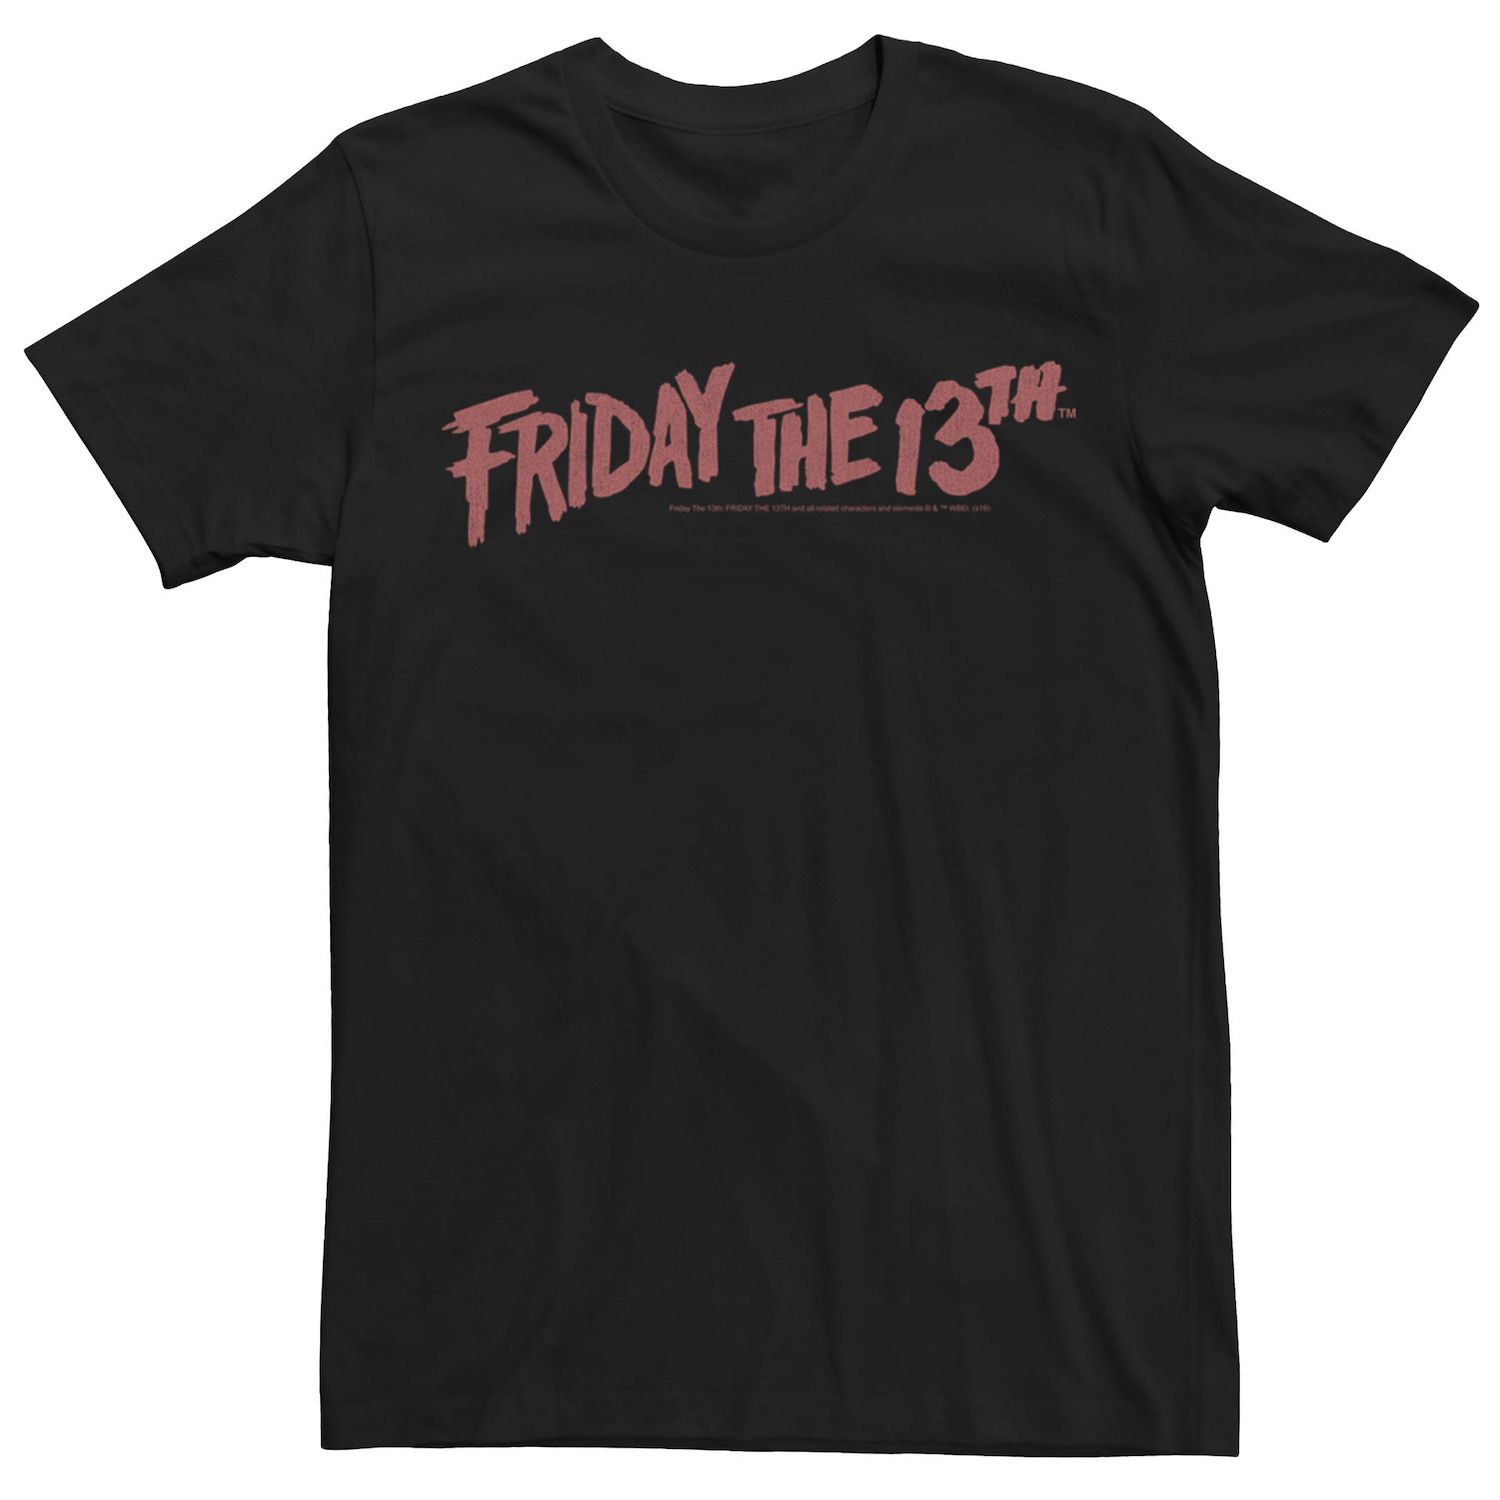 Мужская классическая футболка с логотипом Friday The 13th DC Comics printio футболка классическая friday the 13th